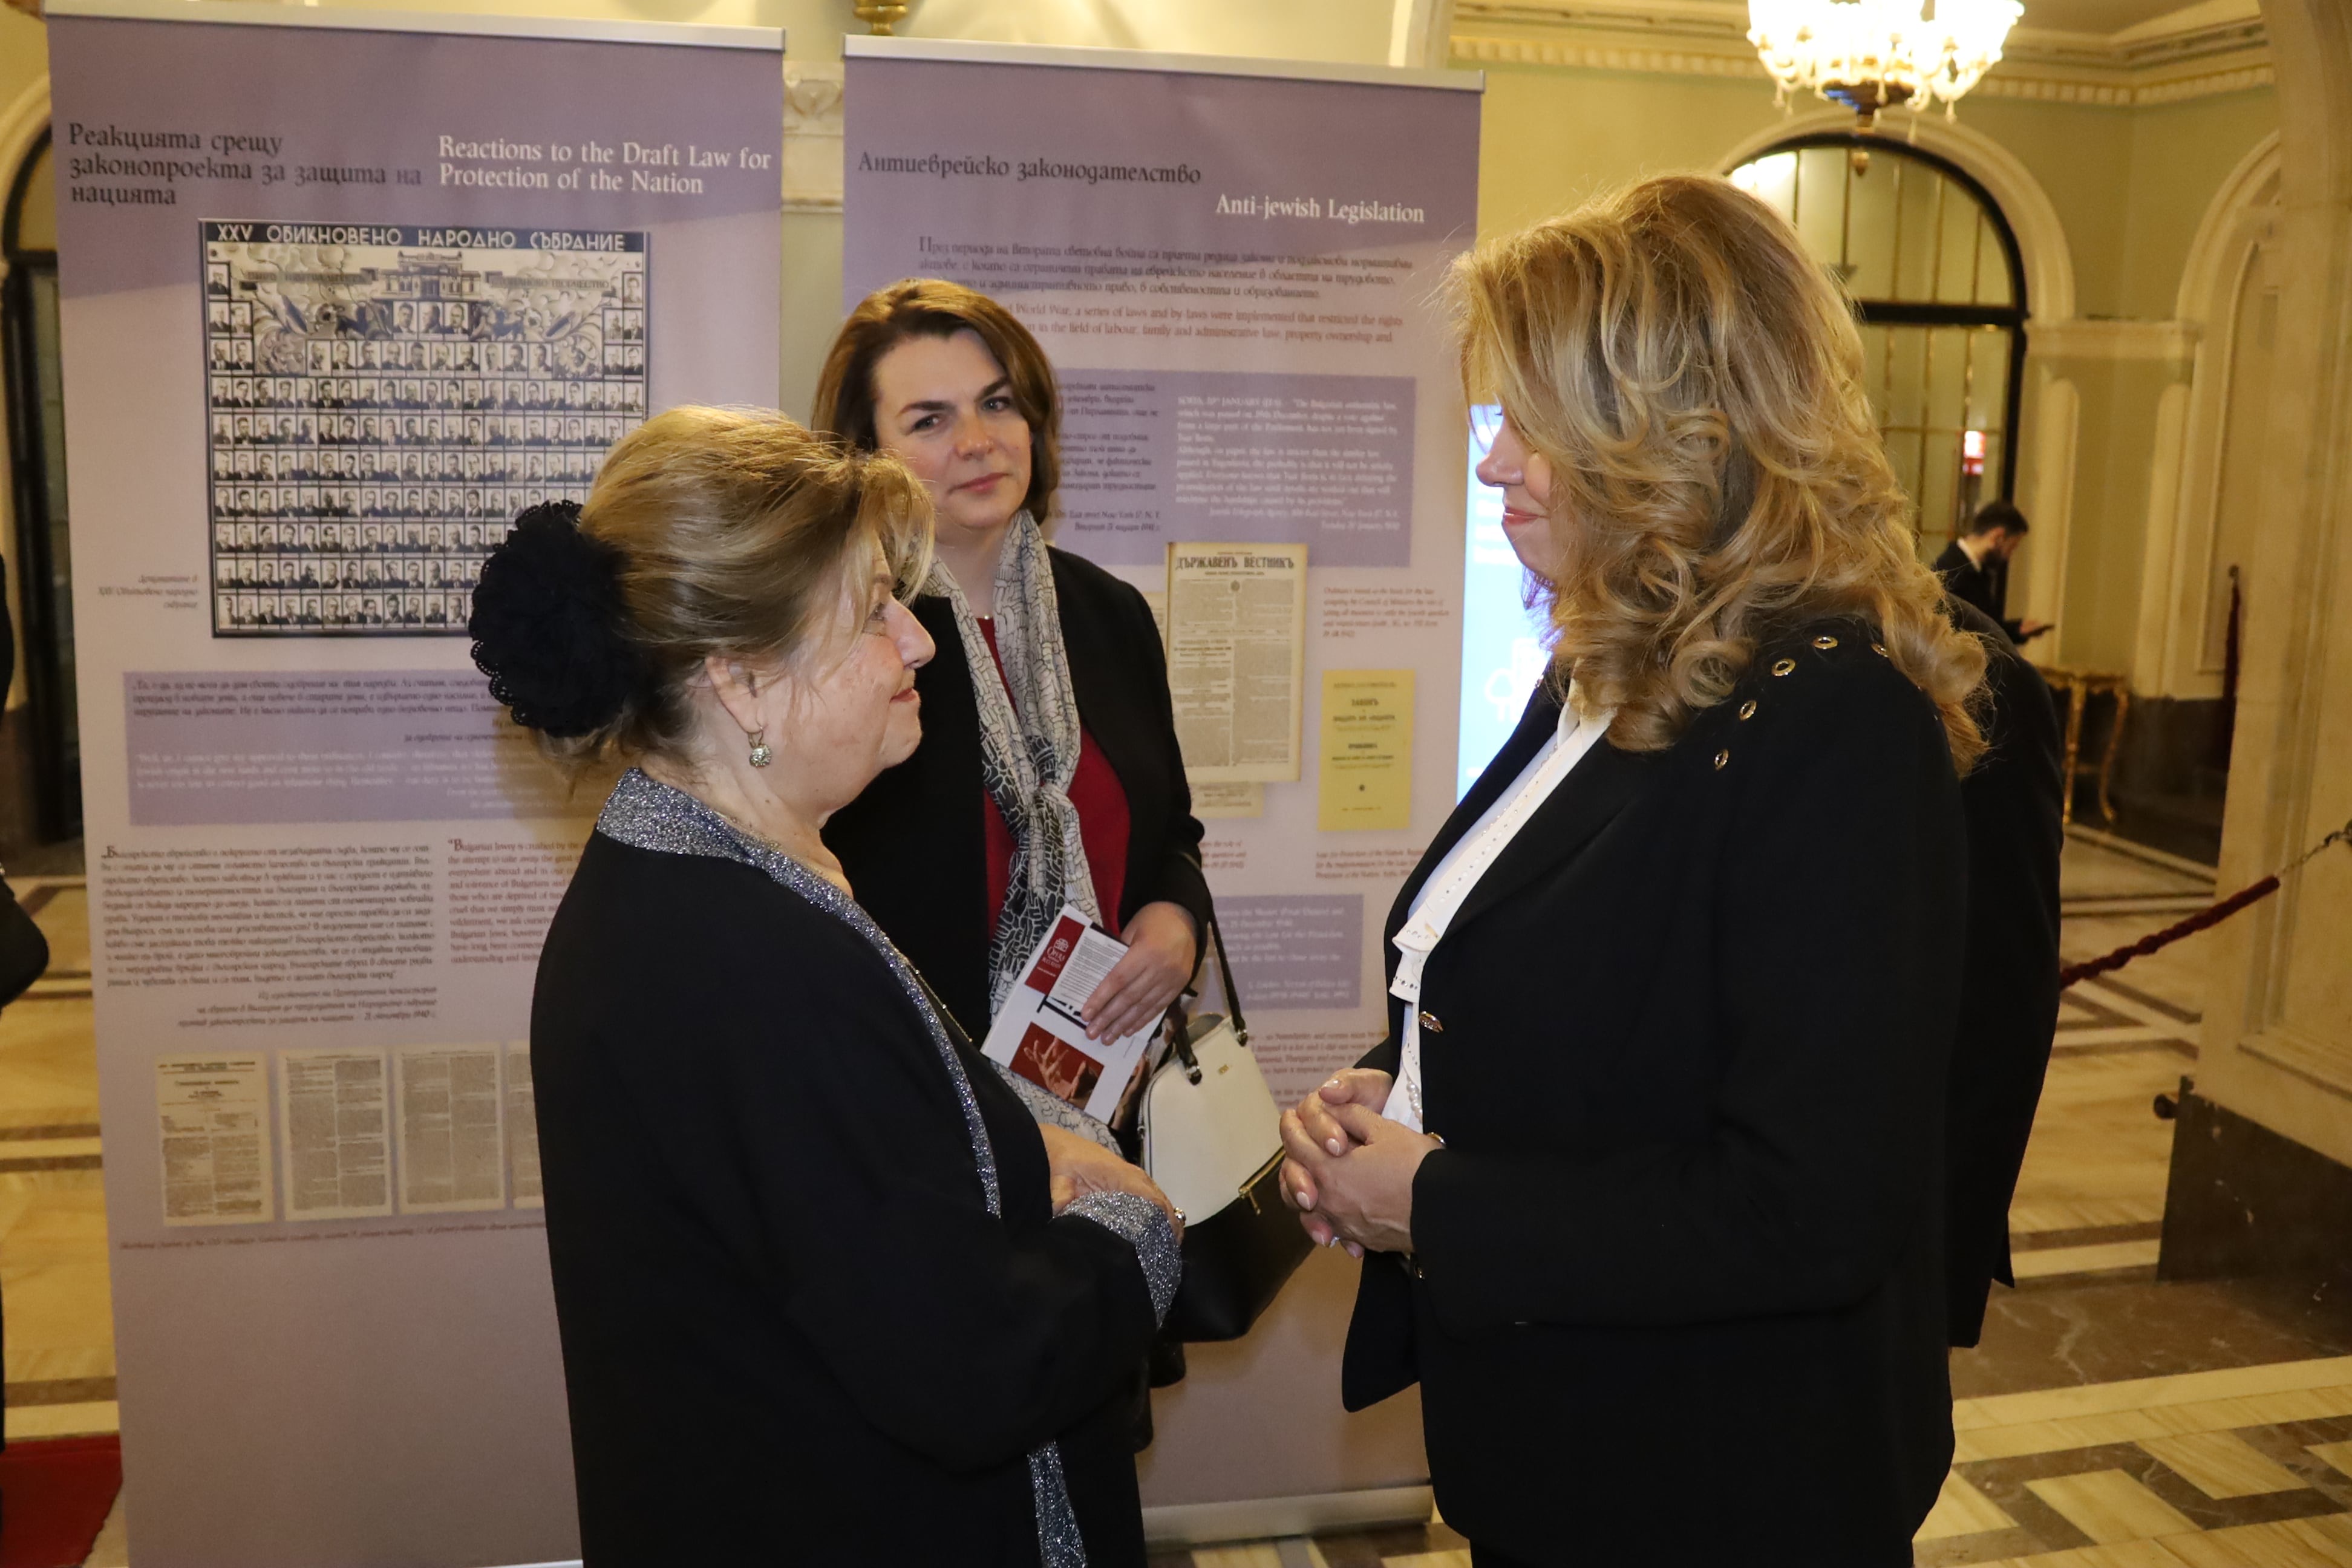 Вицепрезидентът Илияна Йотова откри изложба за спасяването на българските евреи в Националната опера в Букурещ